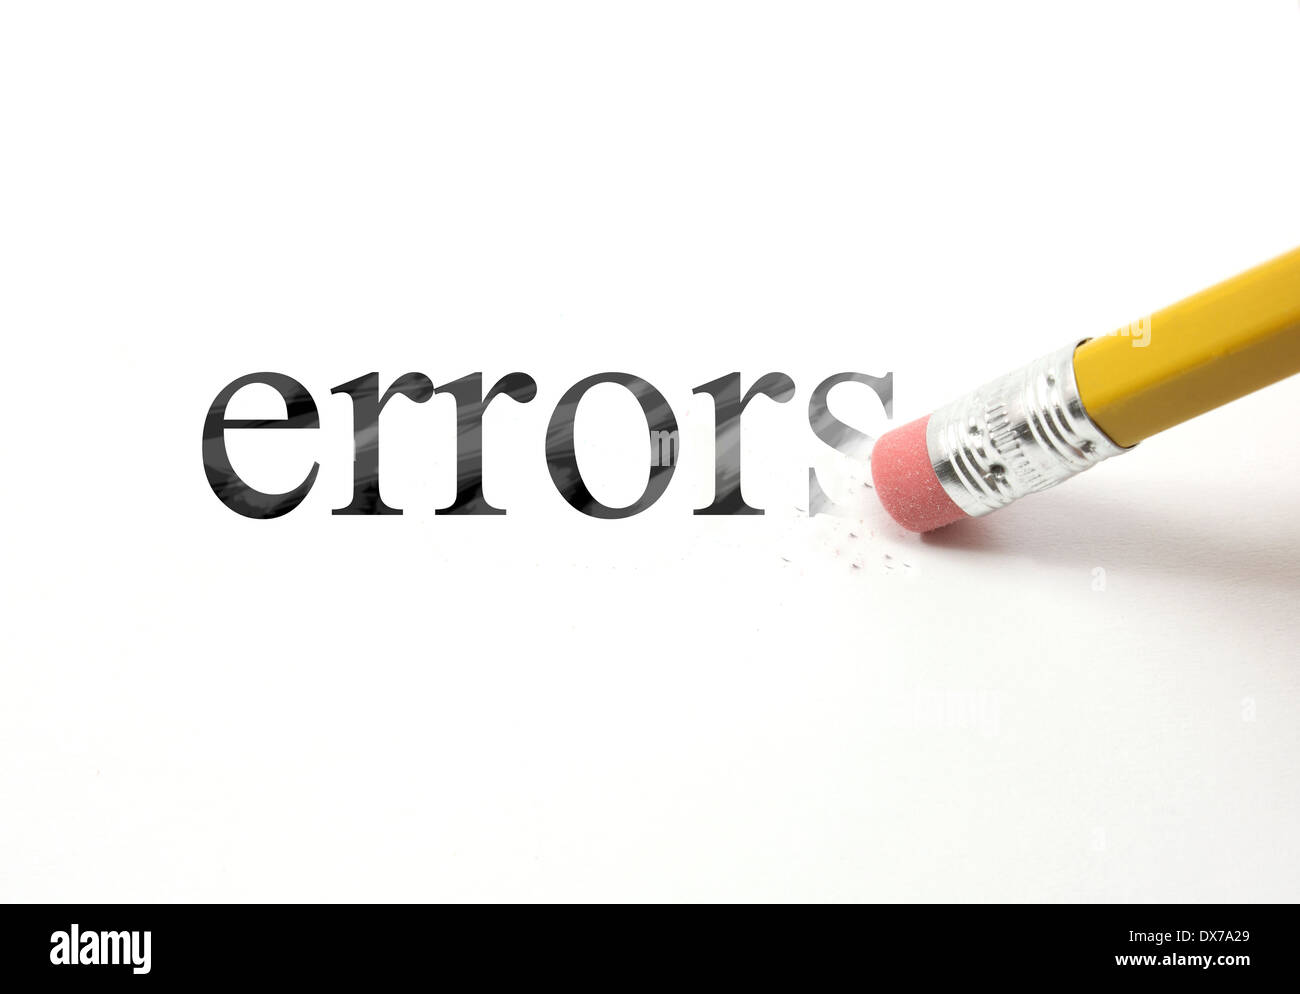 La parola scritta degli errori con una matita su carta bianca. Una gomma da matita è di iniziare a cancellare la parola errori. Foto Stock